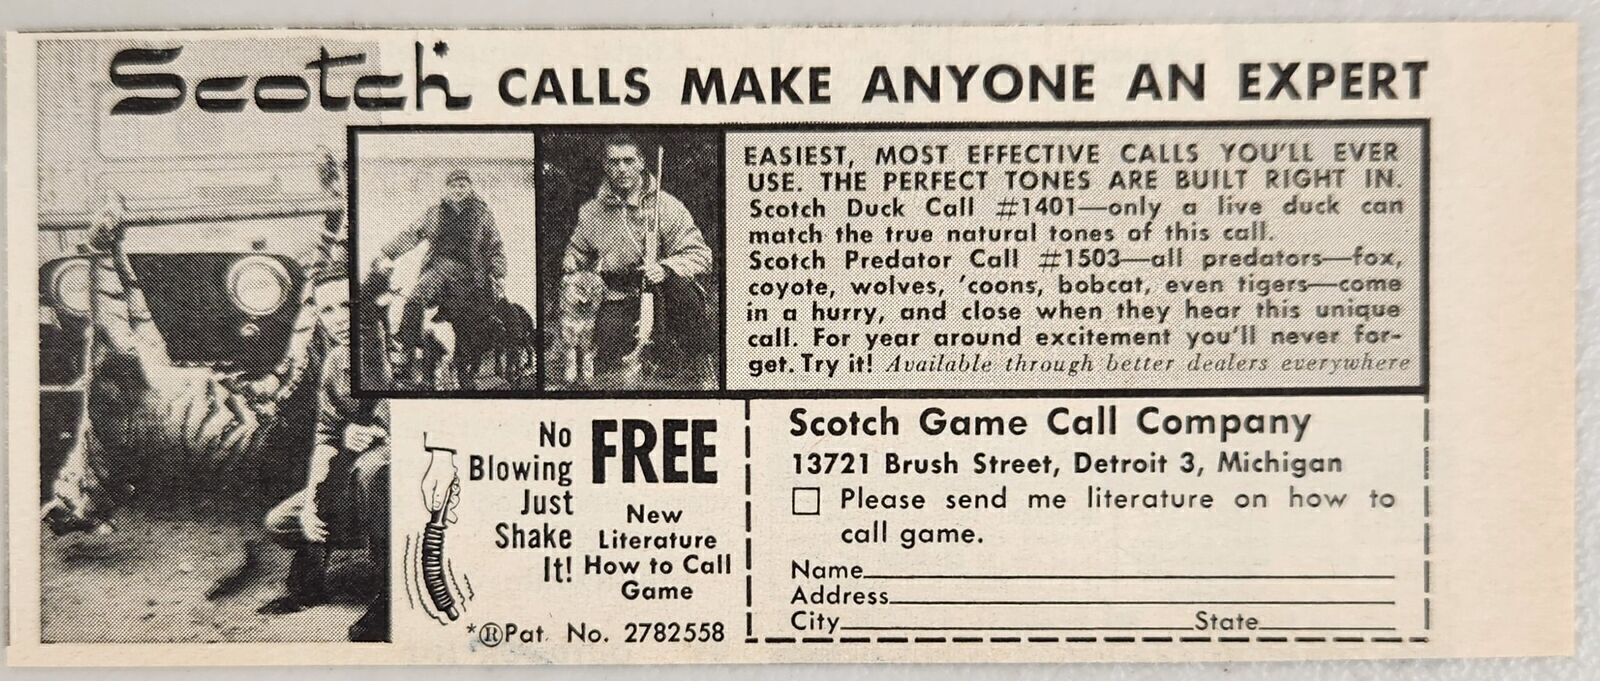 1962 Print Ad Scotch Duck & Predator Game Calls Made in Detroit,Michigan